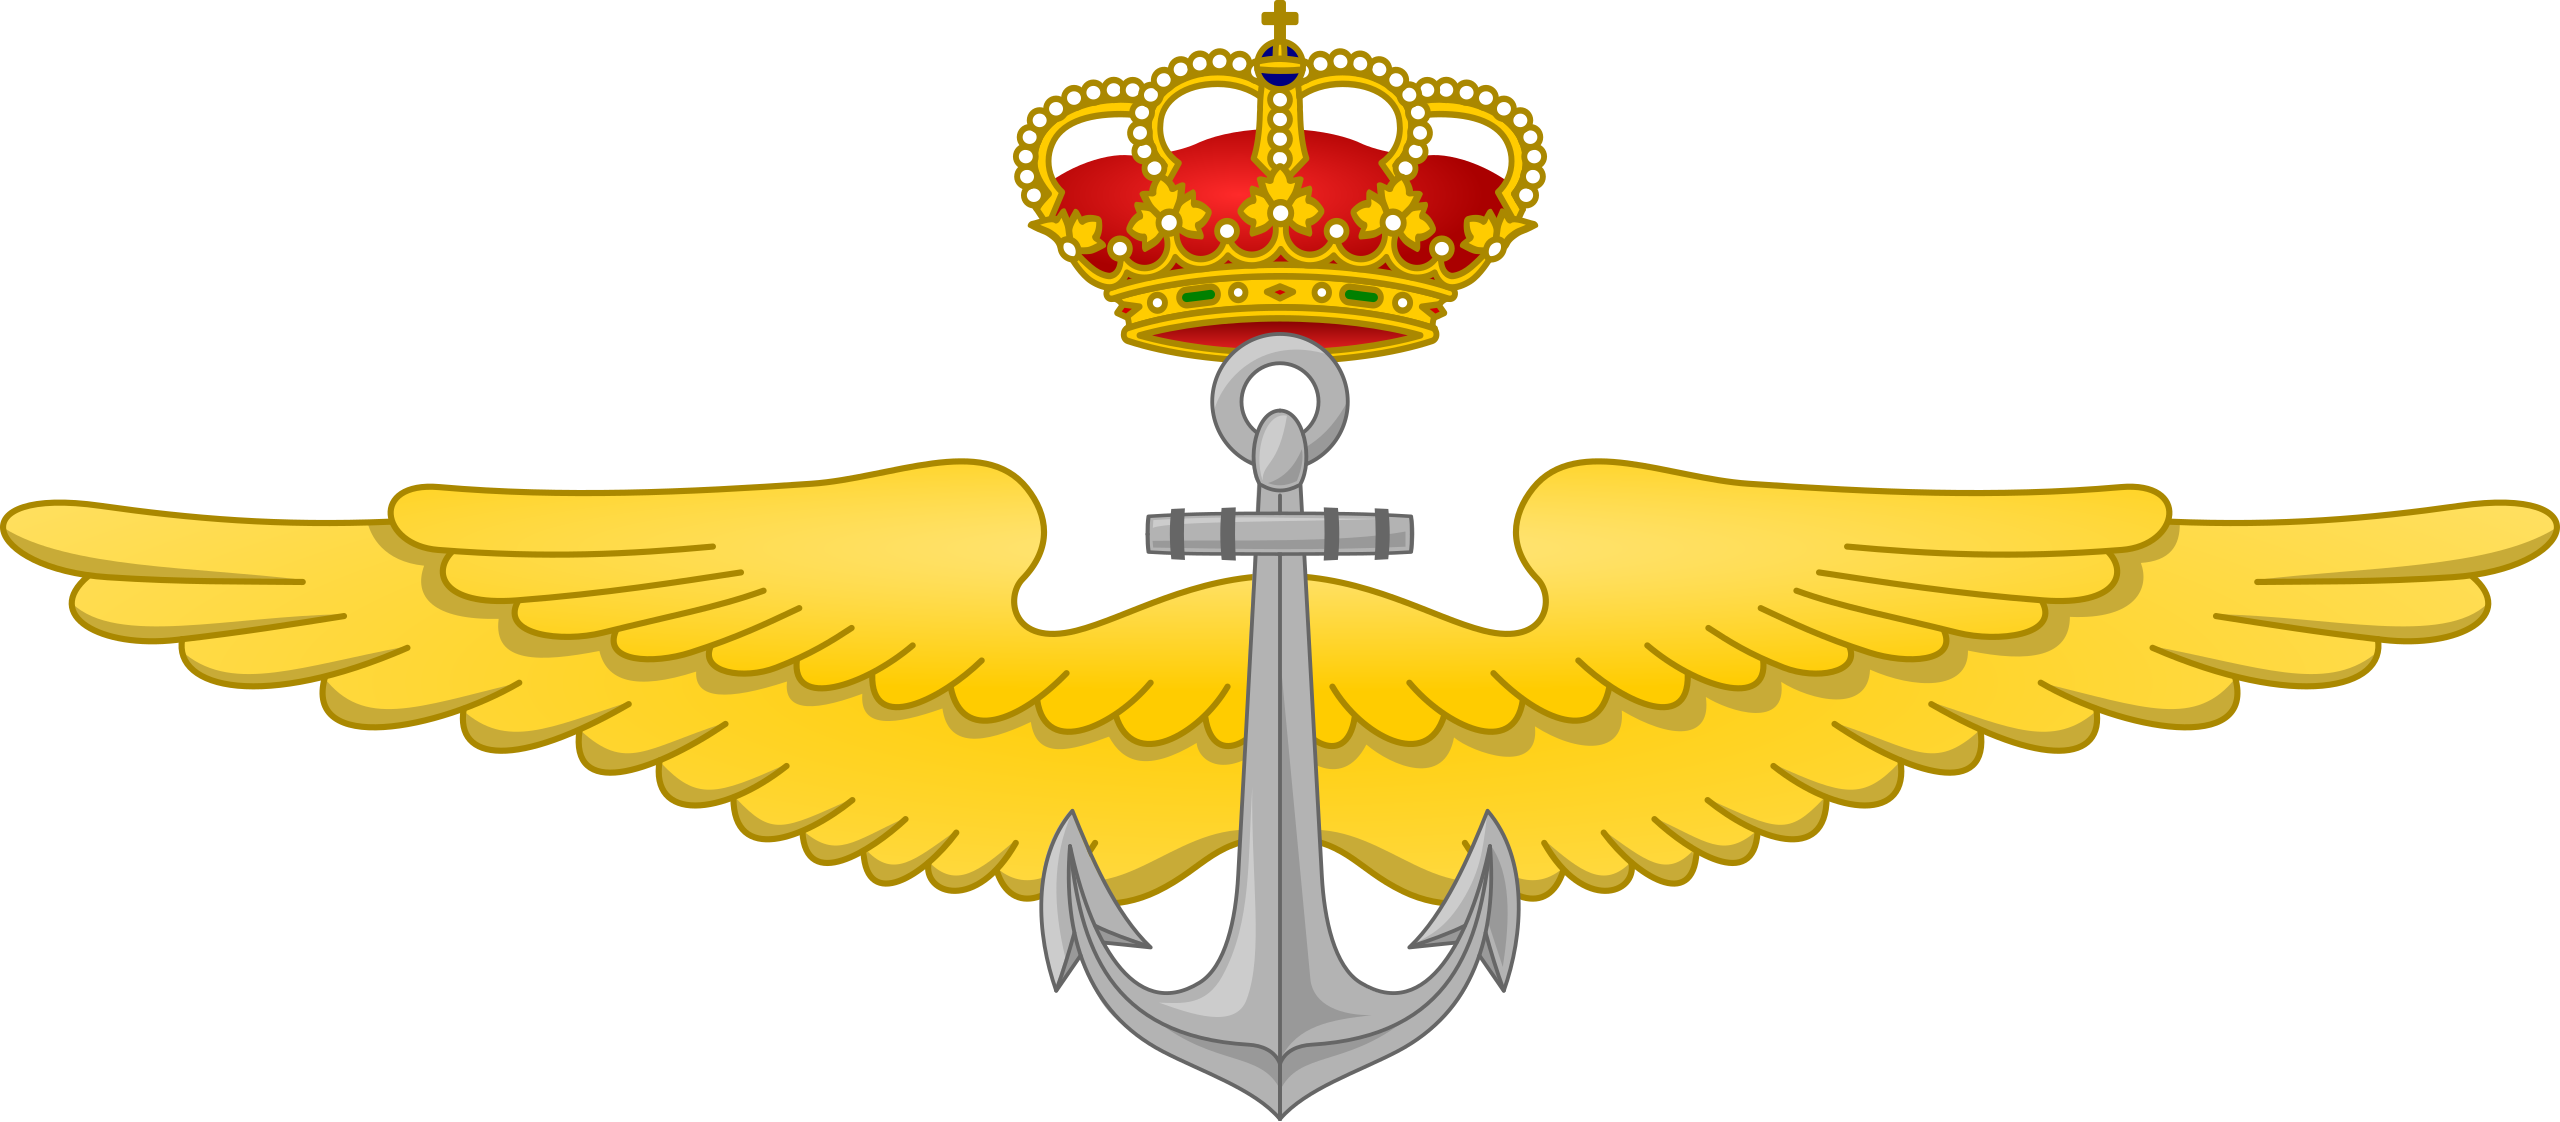 Medalla del Ejército, Naval y Aérea - Wikipedia, la enciclopedia libre